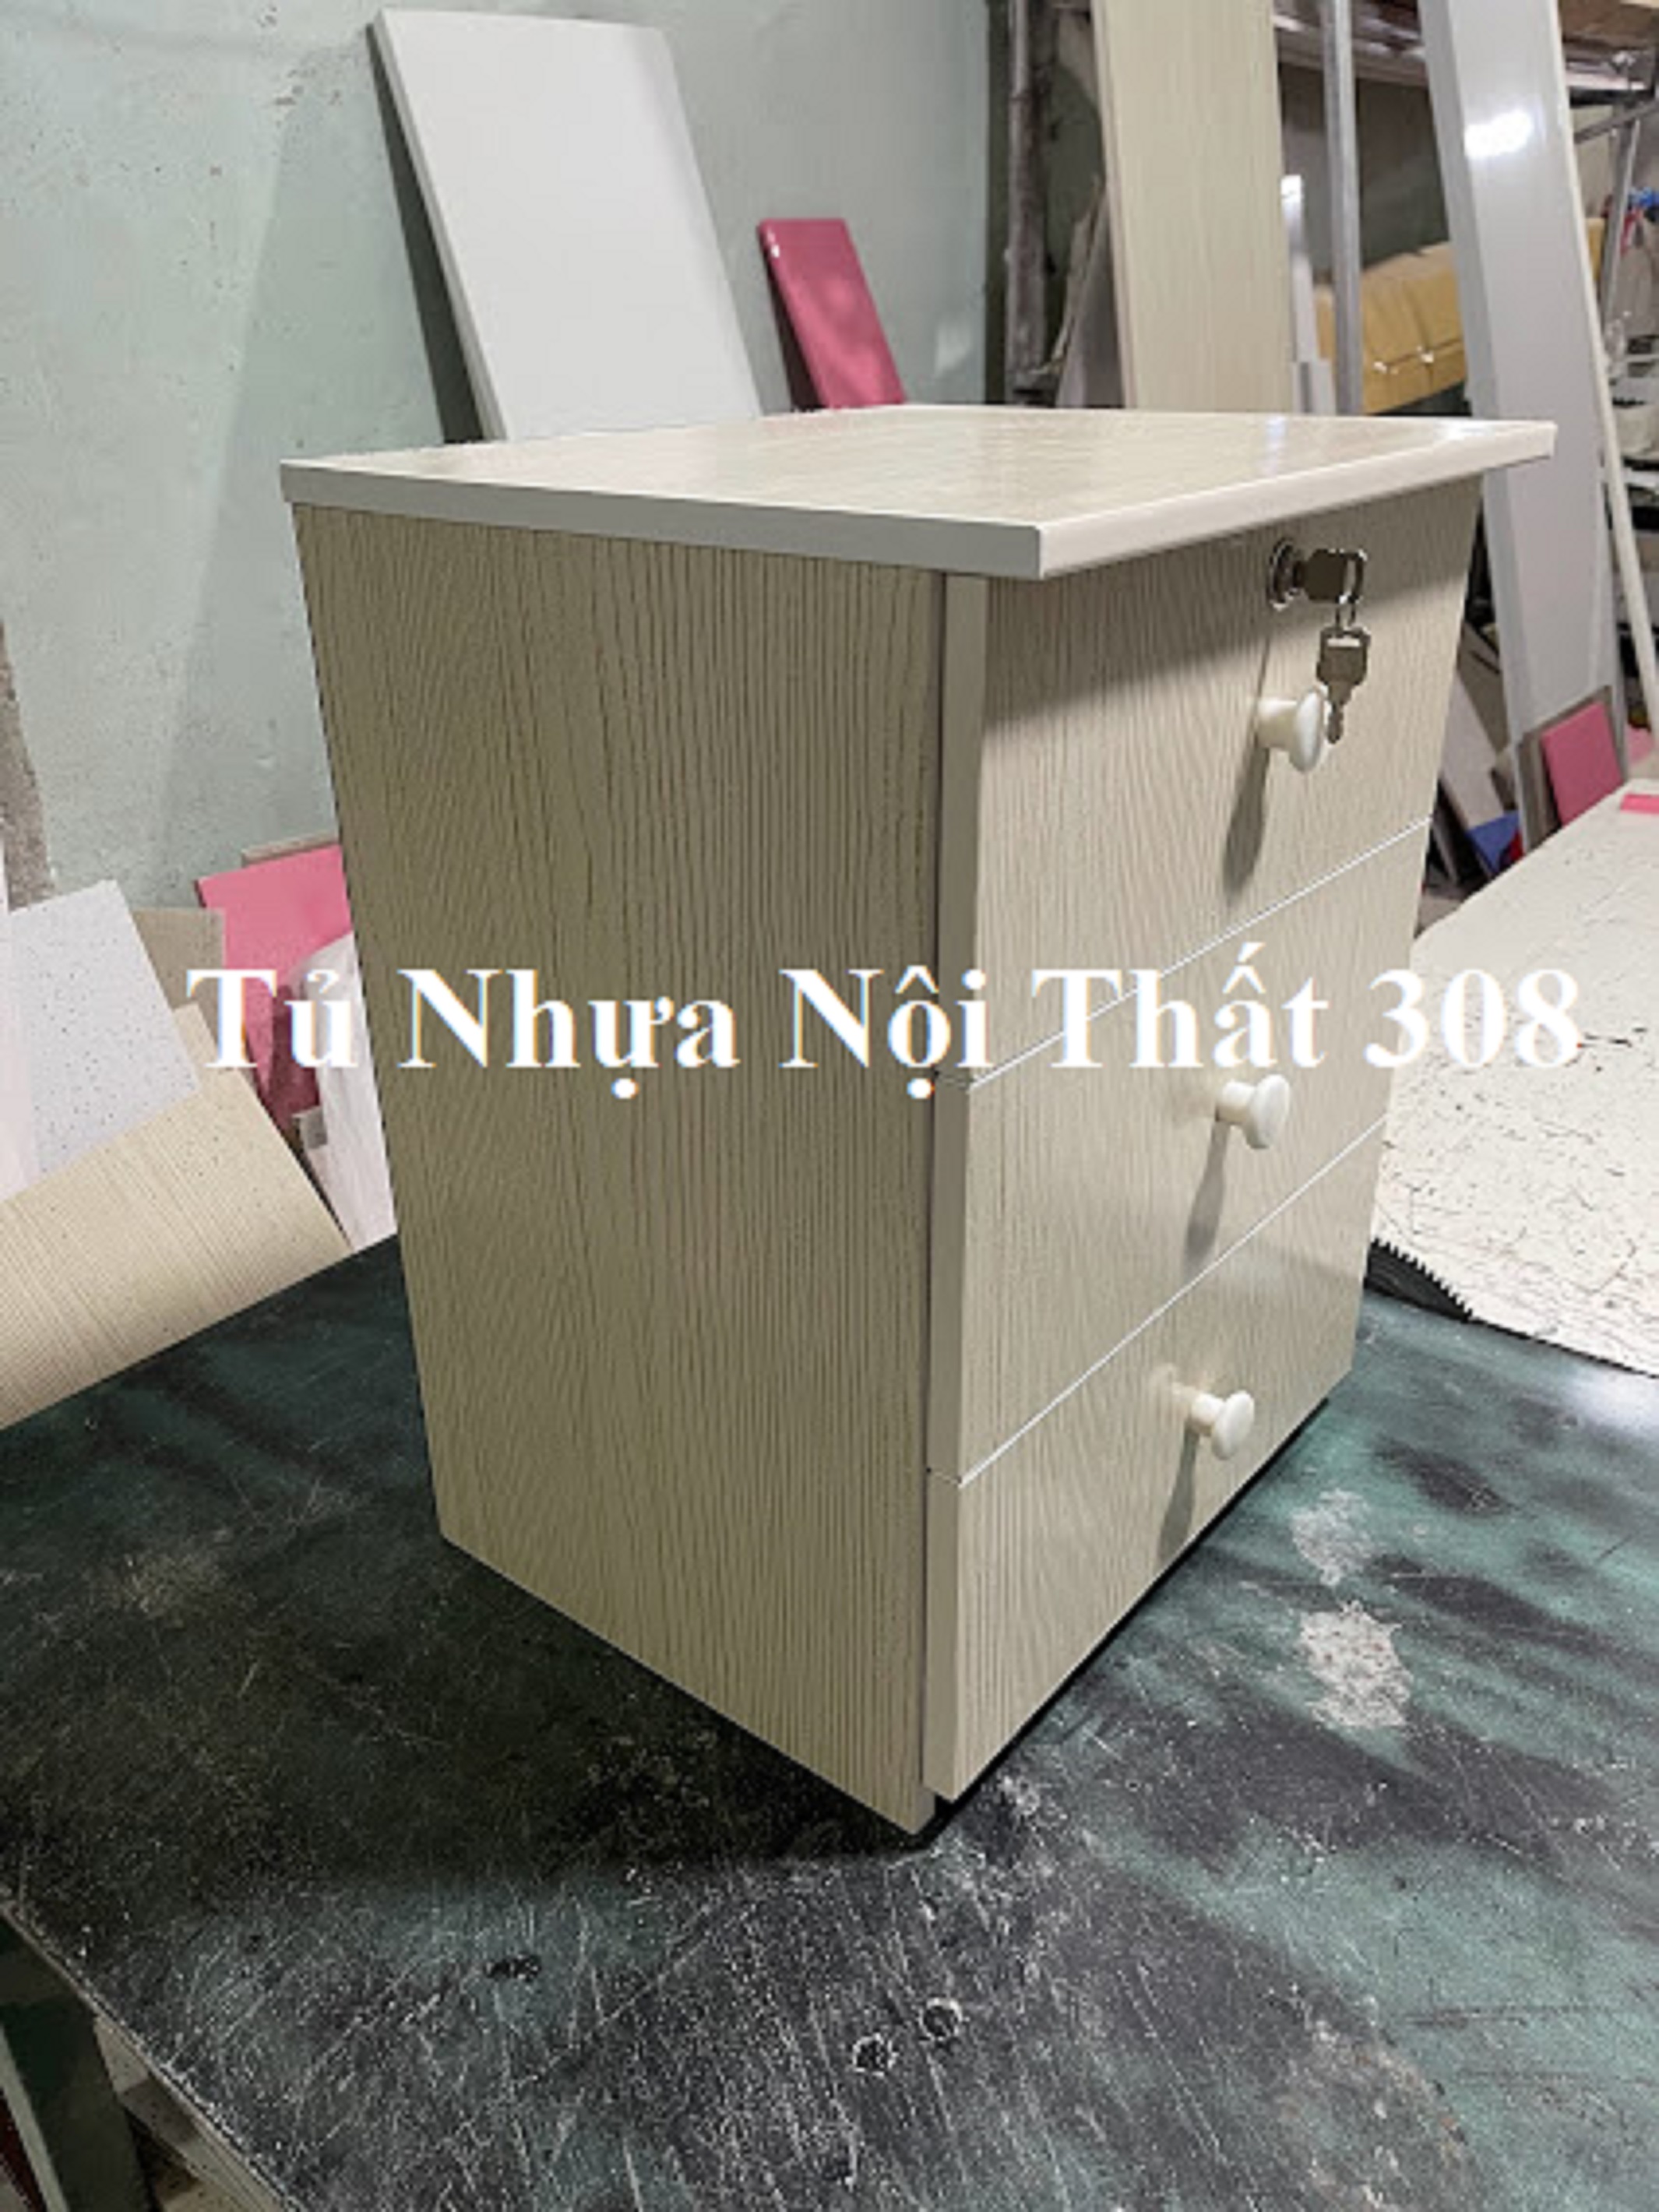 Tủ, Kệ Đầu Giường Nhựa Đài Loan Cao 53cm Ngang 42cm Sâu 32,5cm Màu Gỗ Sồi K168